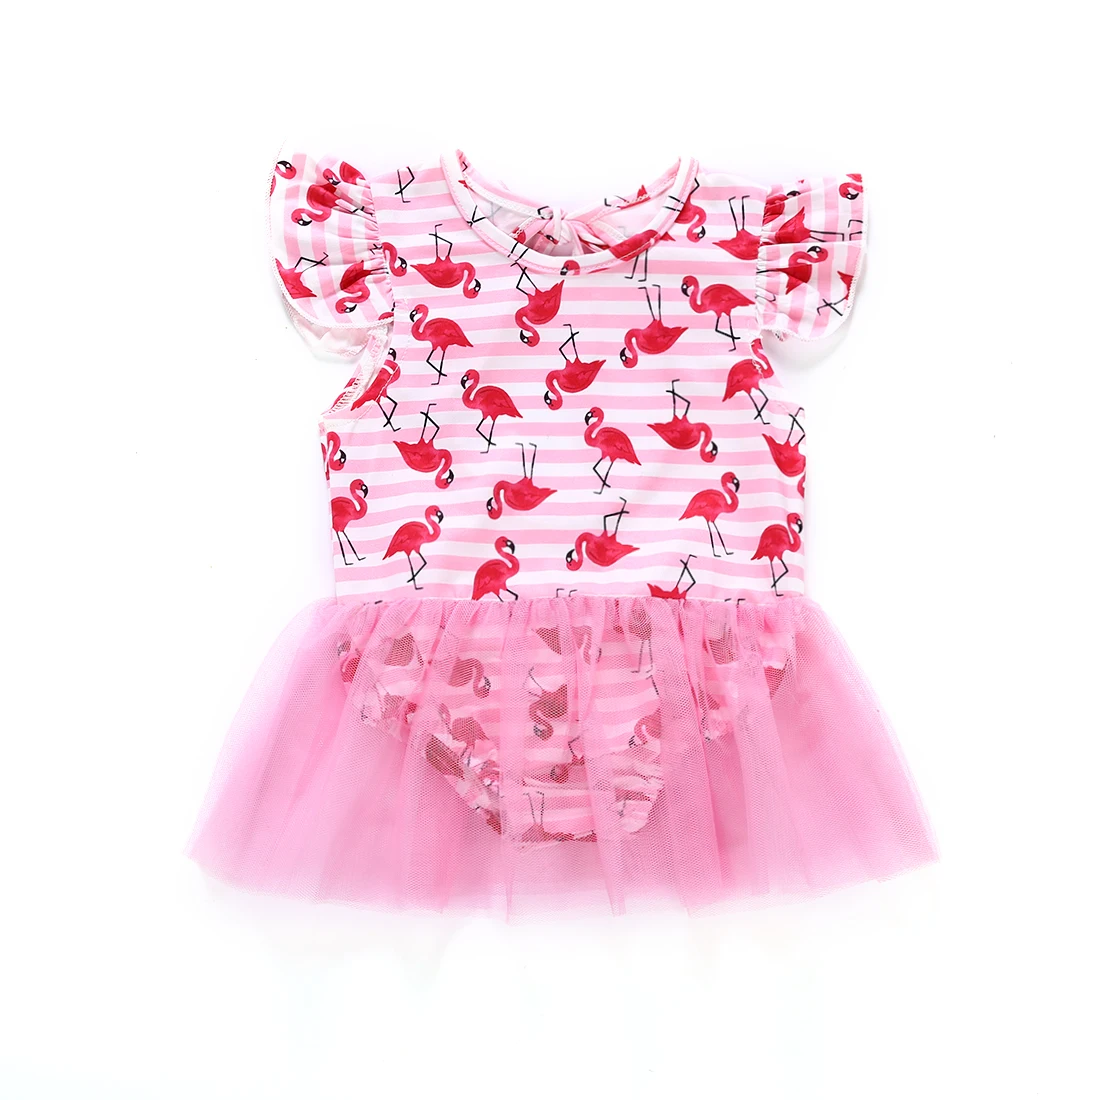 Купальный костюм с фламинго для новорожденных девочек, Цельный купальник, монокини, купальный костюм, пляжное платье, комбинезон - Цвет: A